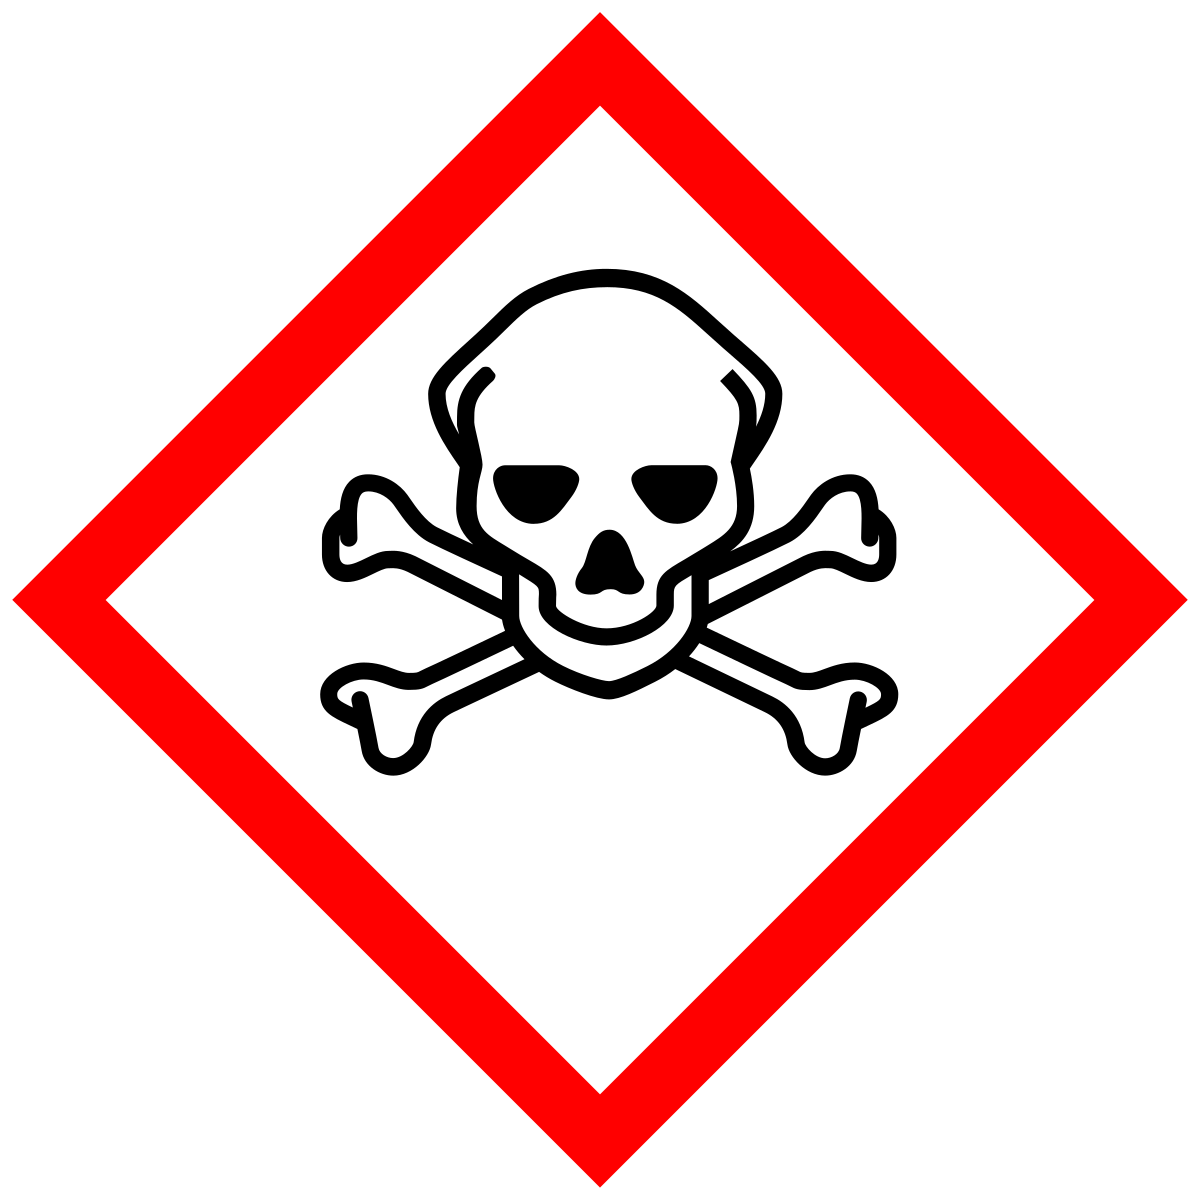 Alert symbol or warning sign